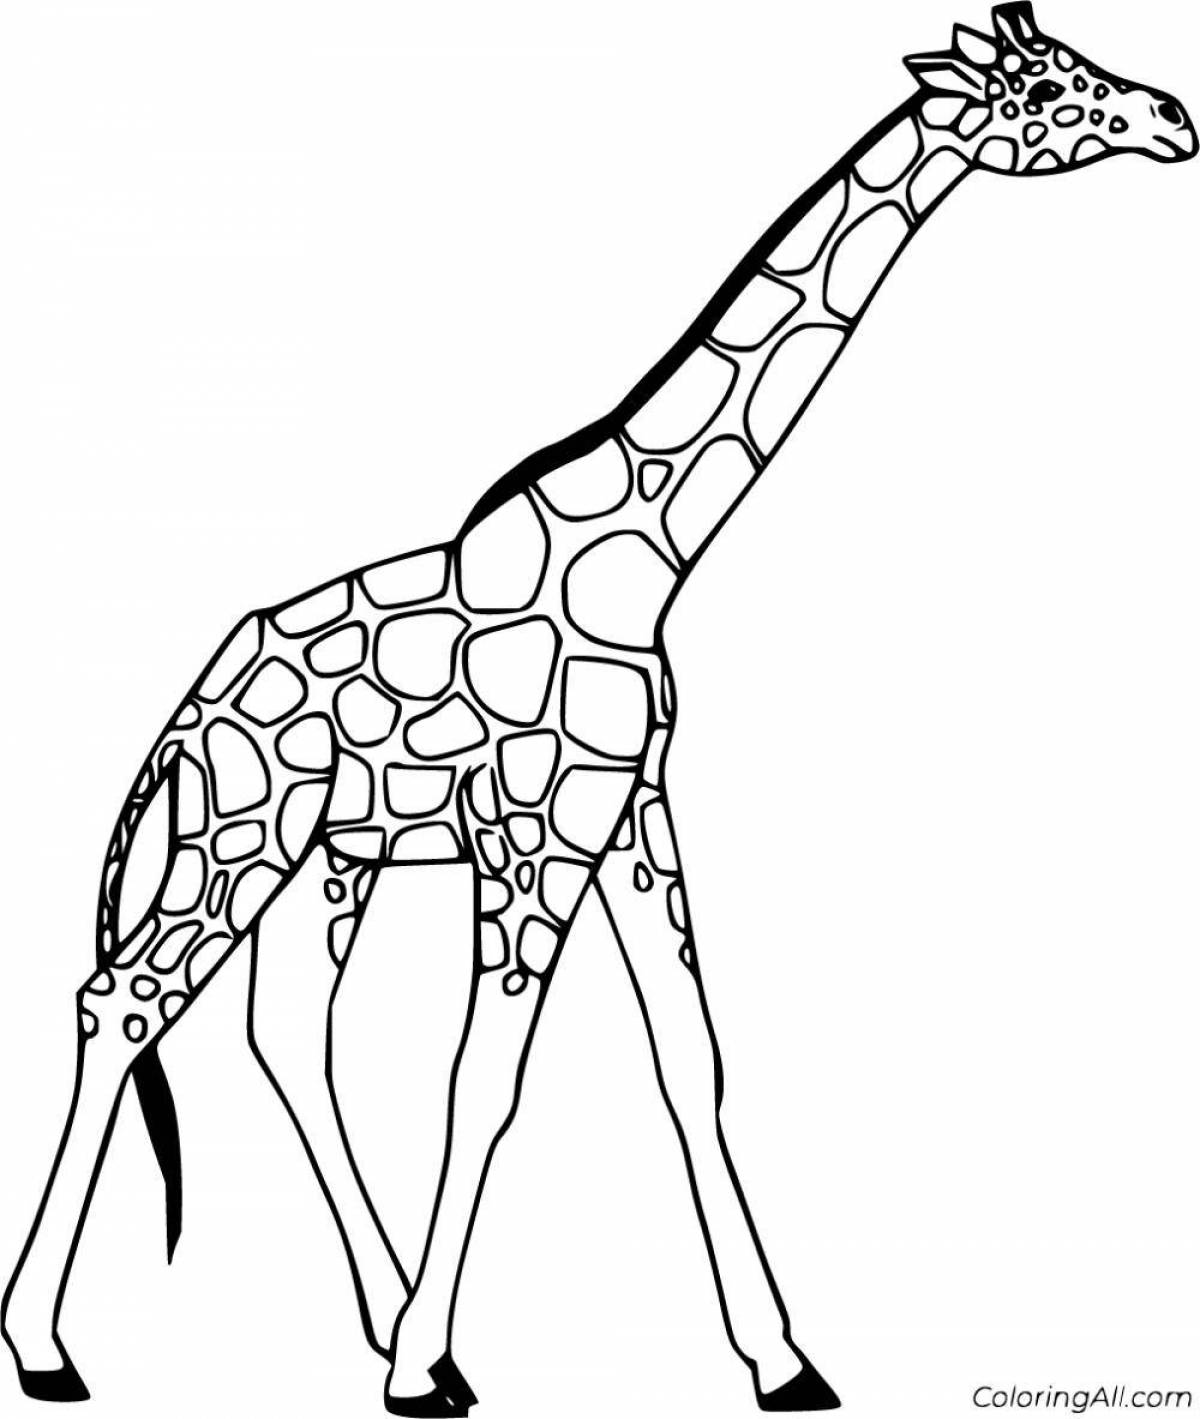 Великолепная раскраска жираф по номерам